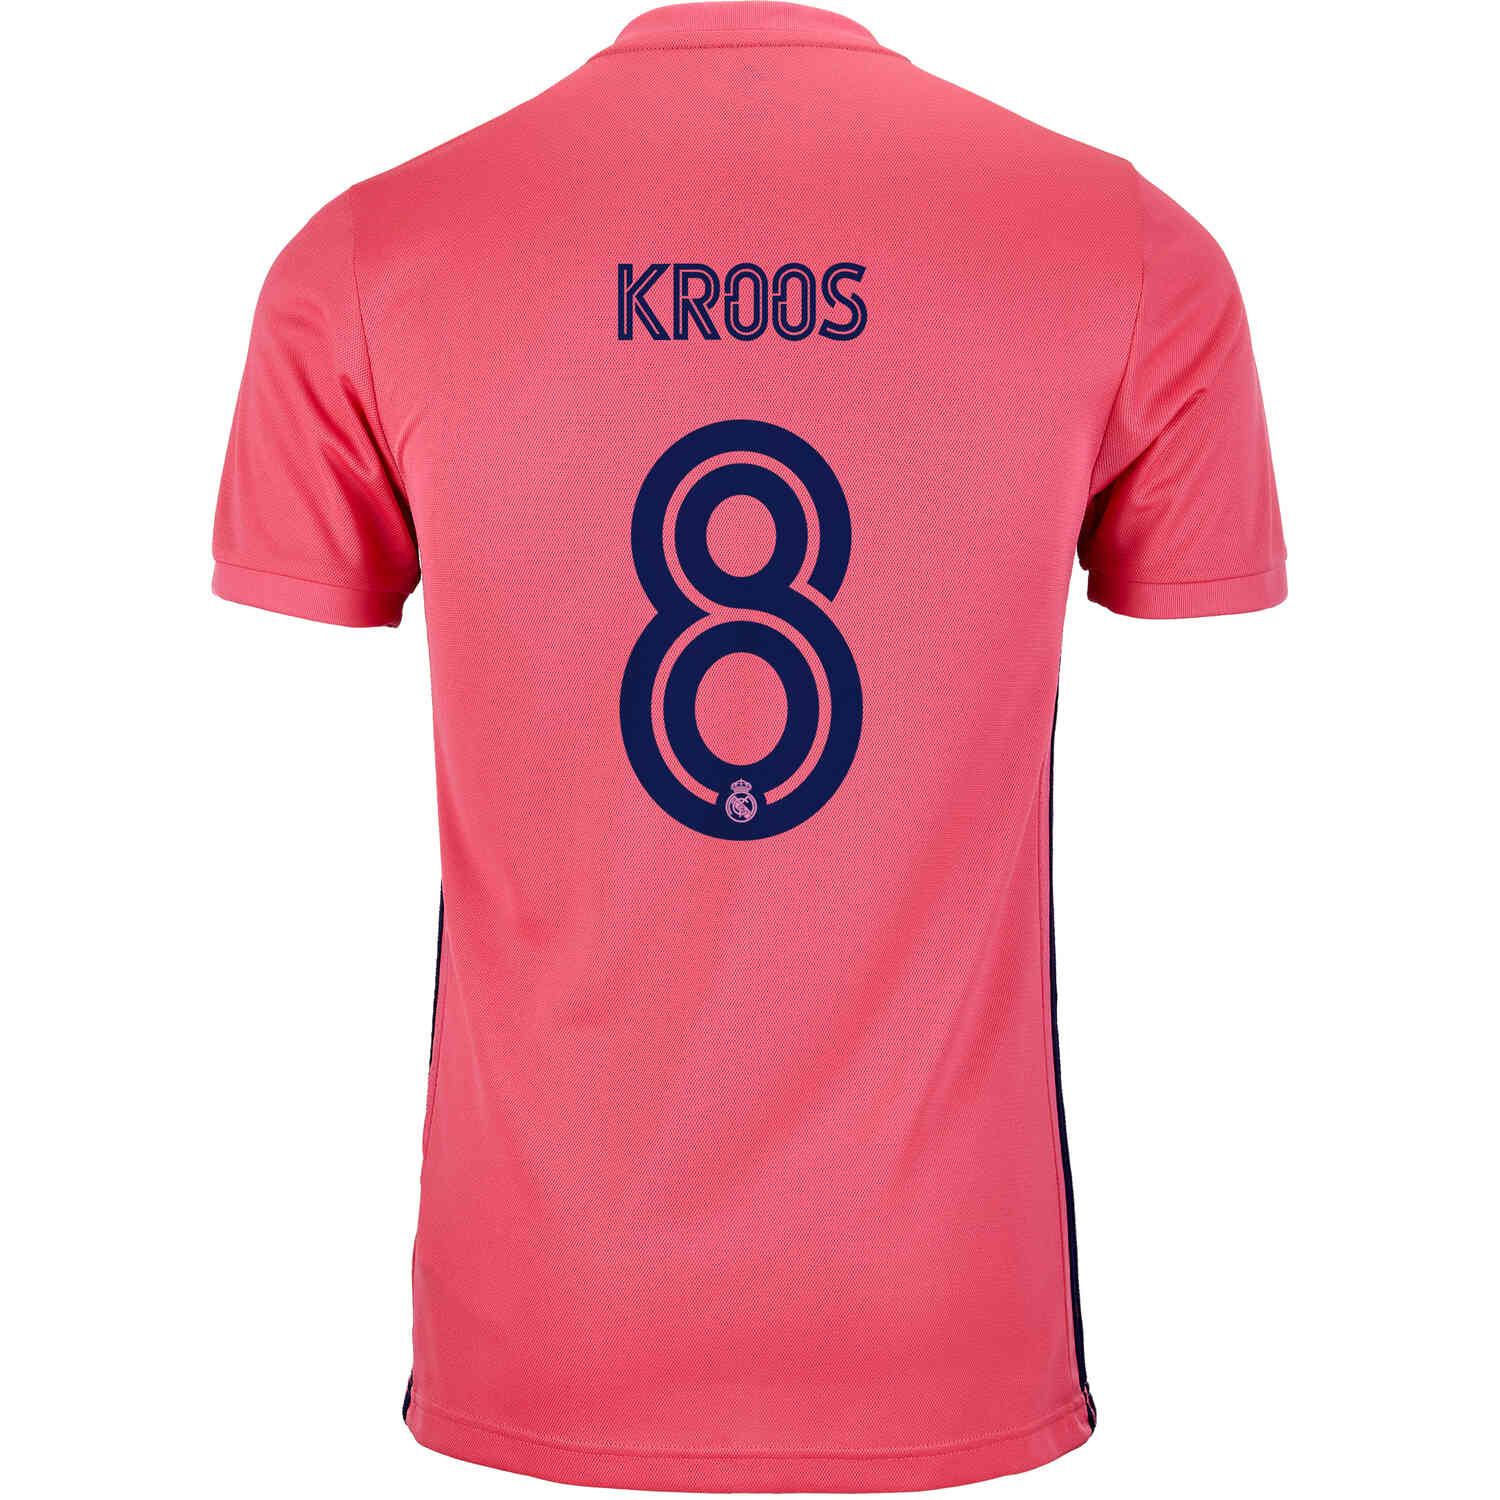 2020/21 Kids adidas Toni Kroos Real Madrid Away Jersey - SoccerPro